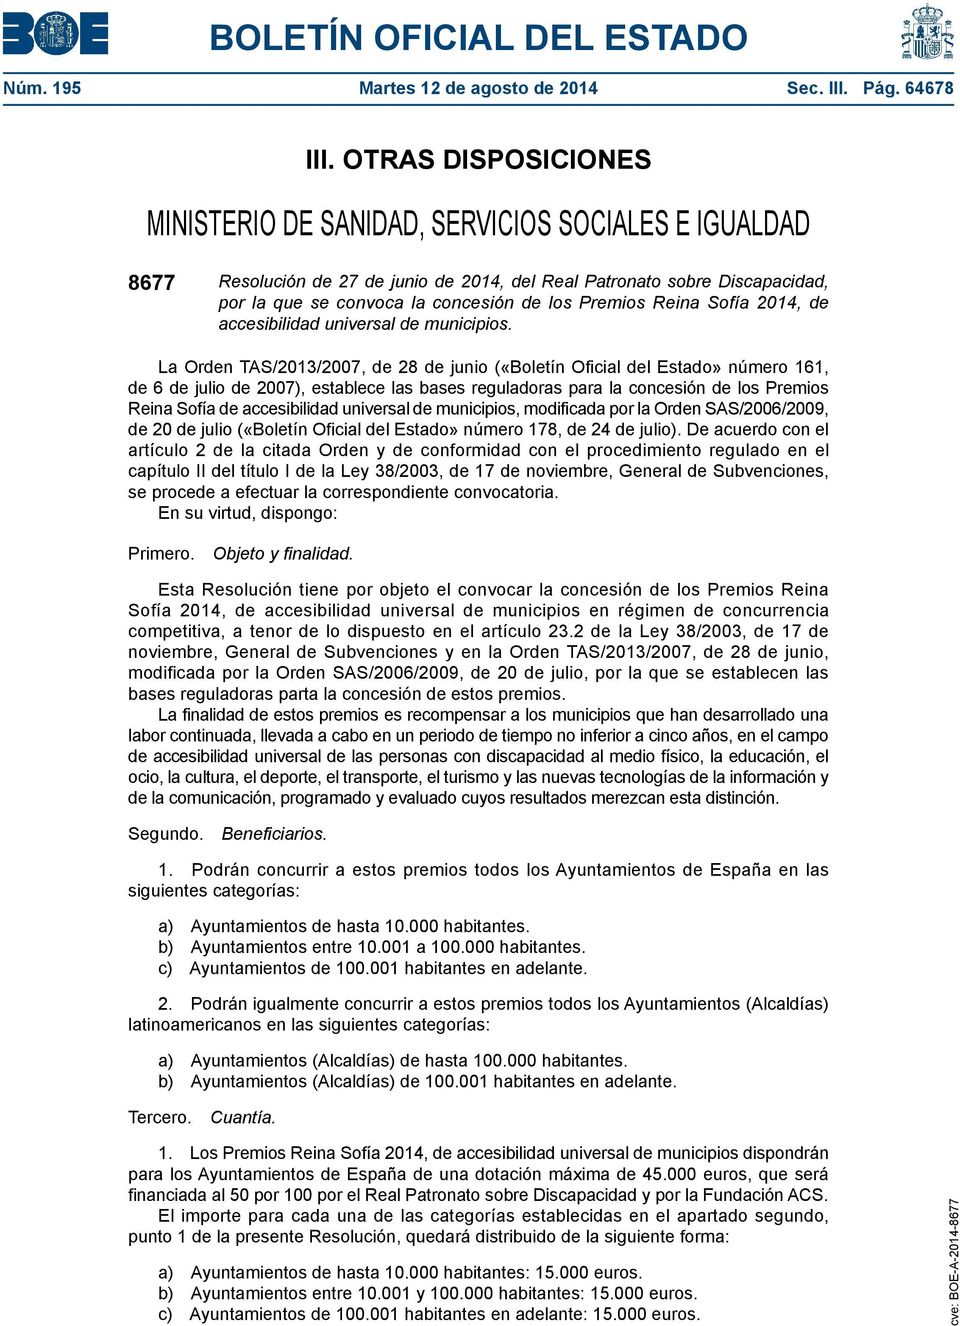 Premios Reina Sofía 2014, de accesibilidad universal de municipios.